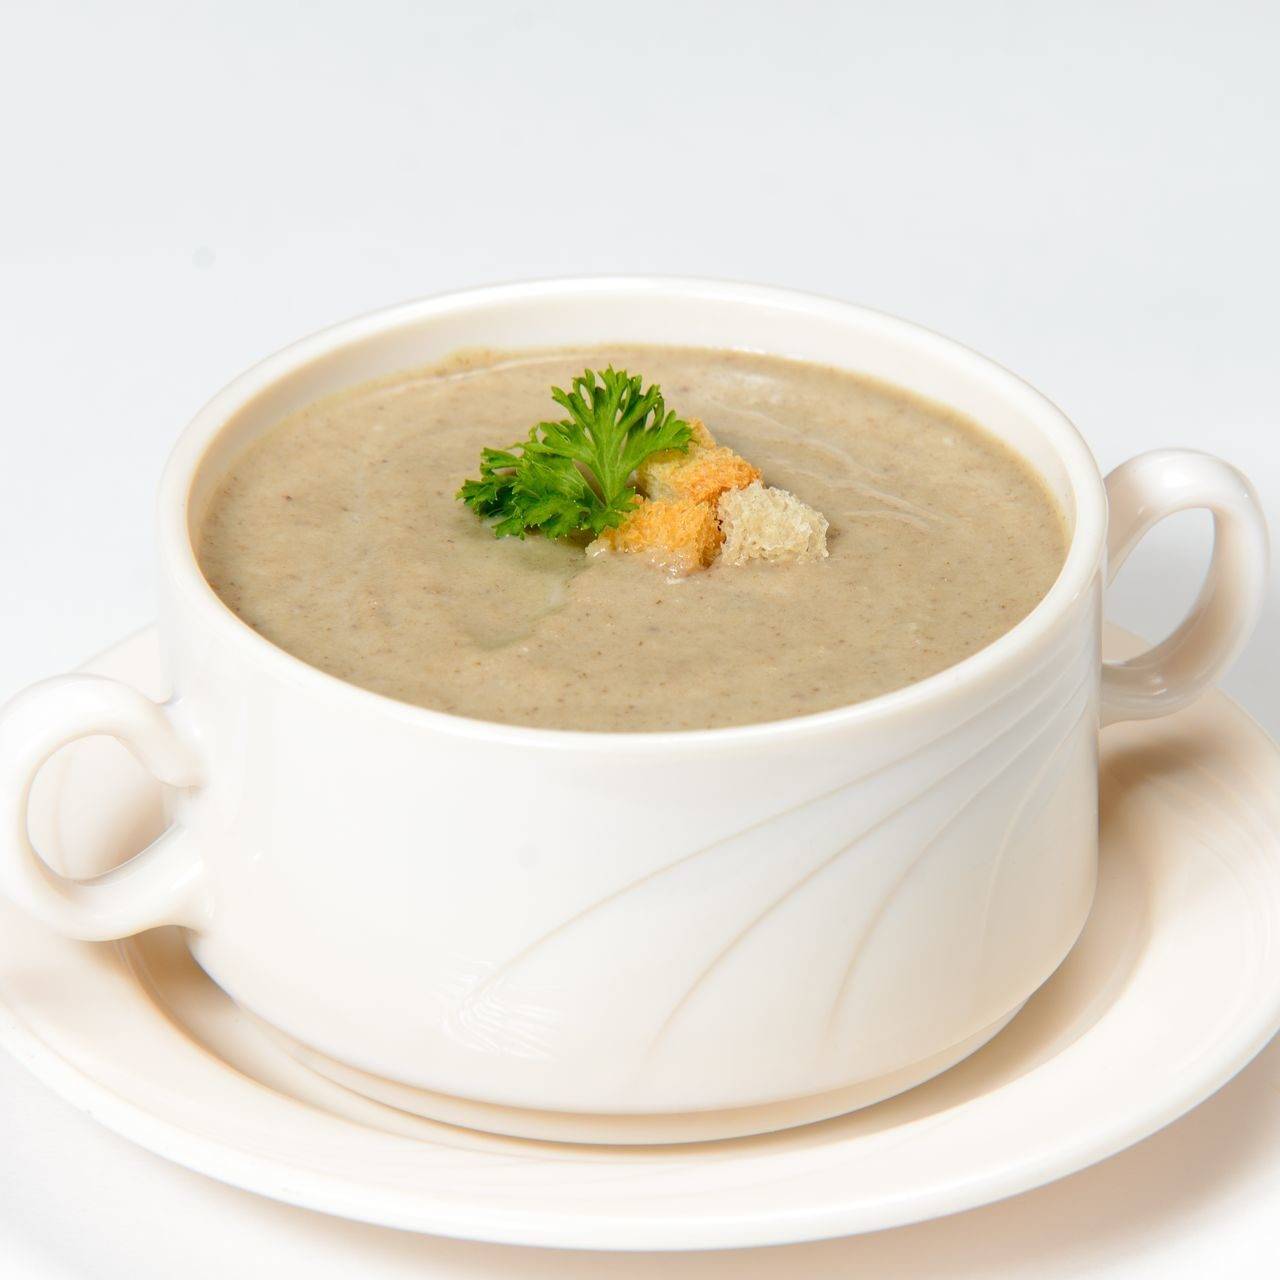 Грибной суп-пюре из лесных грибов: рецепт приготовления со сливками, а также советы и полезные хитрости